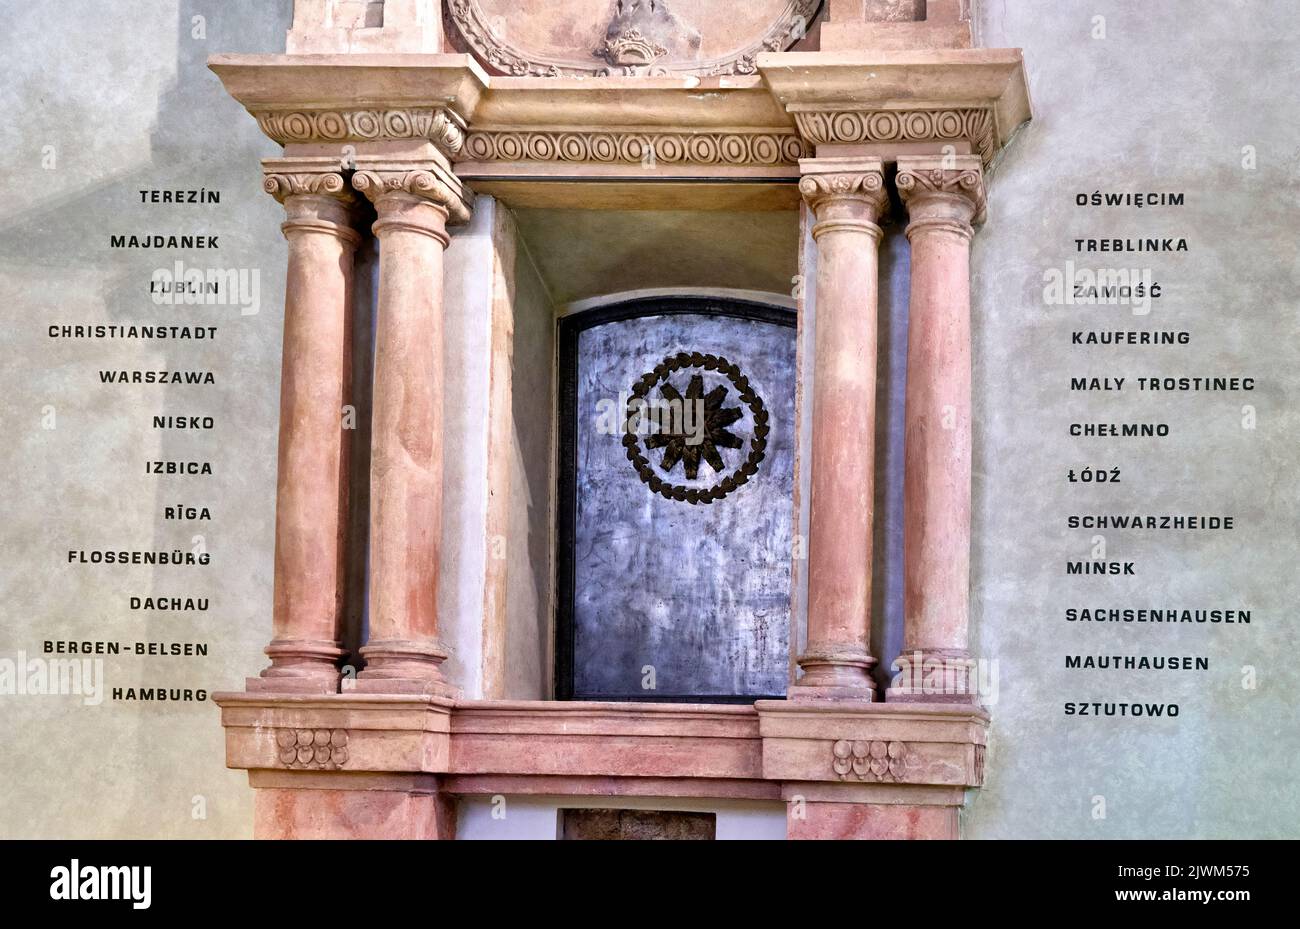 Prag, Tschechien, 29. August 2022: Holocaust-Mahnmal in der Pinkasova-Synagoge mit einer Liste der Konzentrationslager, in denen die Nazis Juden ermordeten. Stockfoto